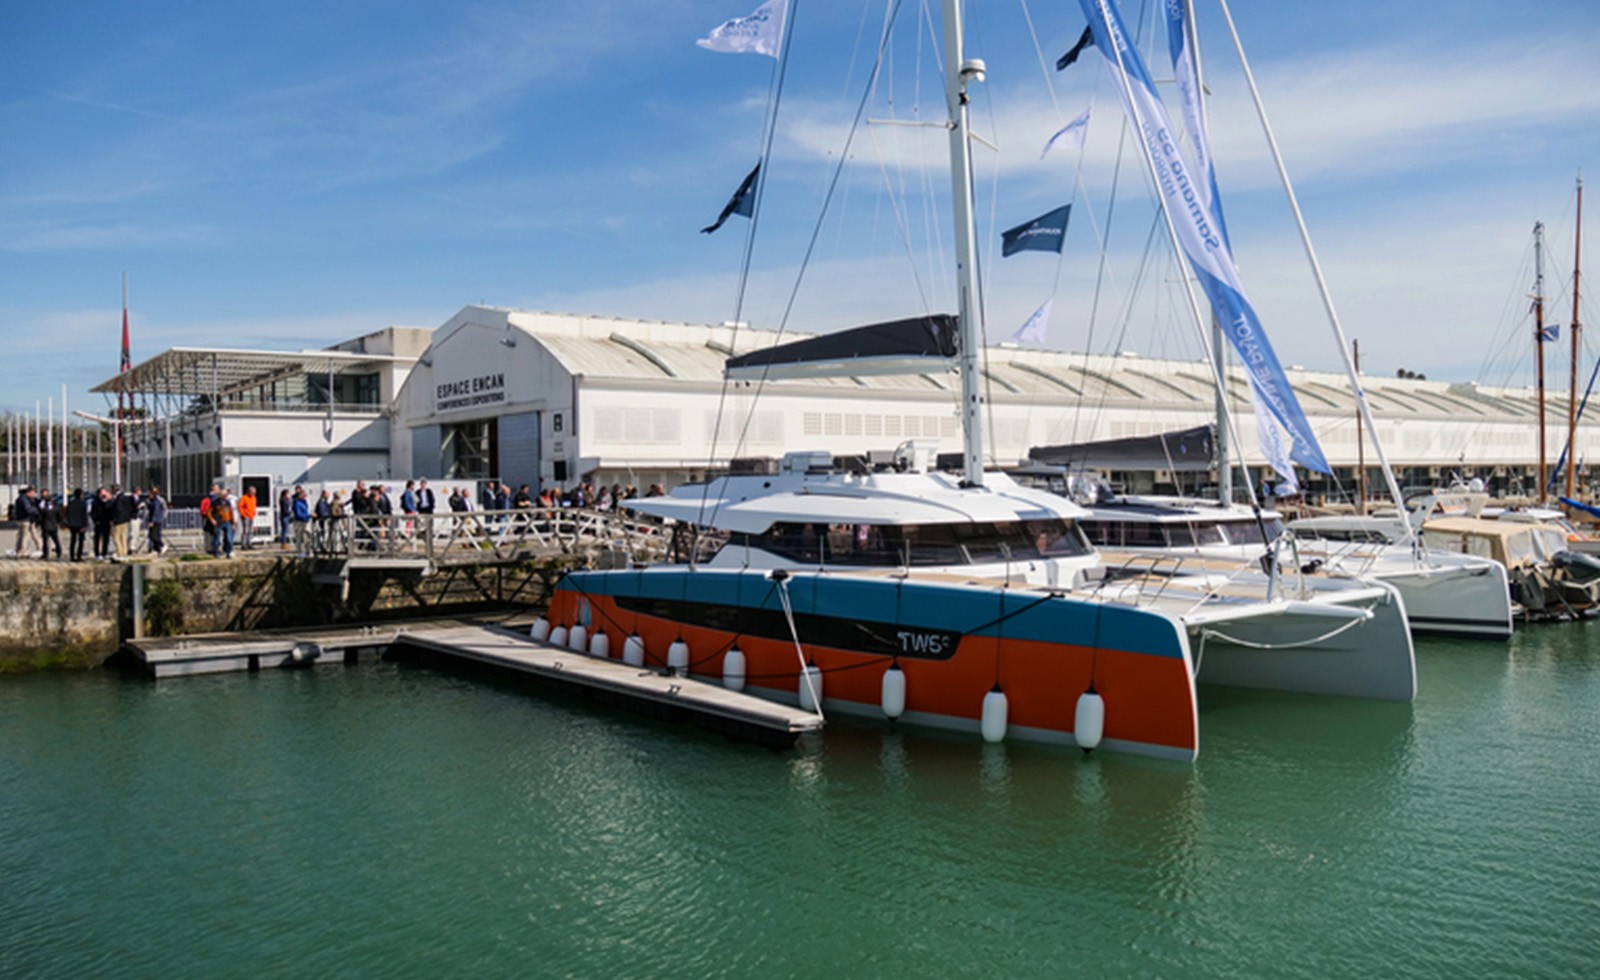 A Fountaine Pajot desenvolve o primeiro protótipo do mundo de um catamarã de cruzeiro com propulsão 100% elétrica, usando hidrogénio como fonte de energia.